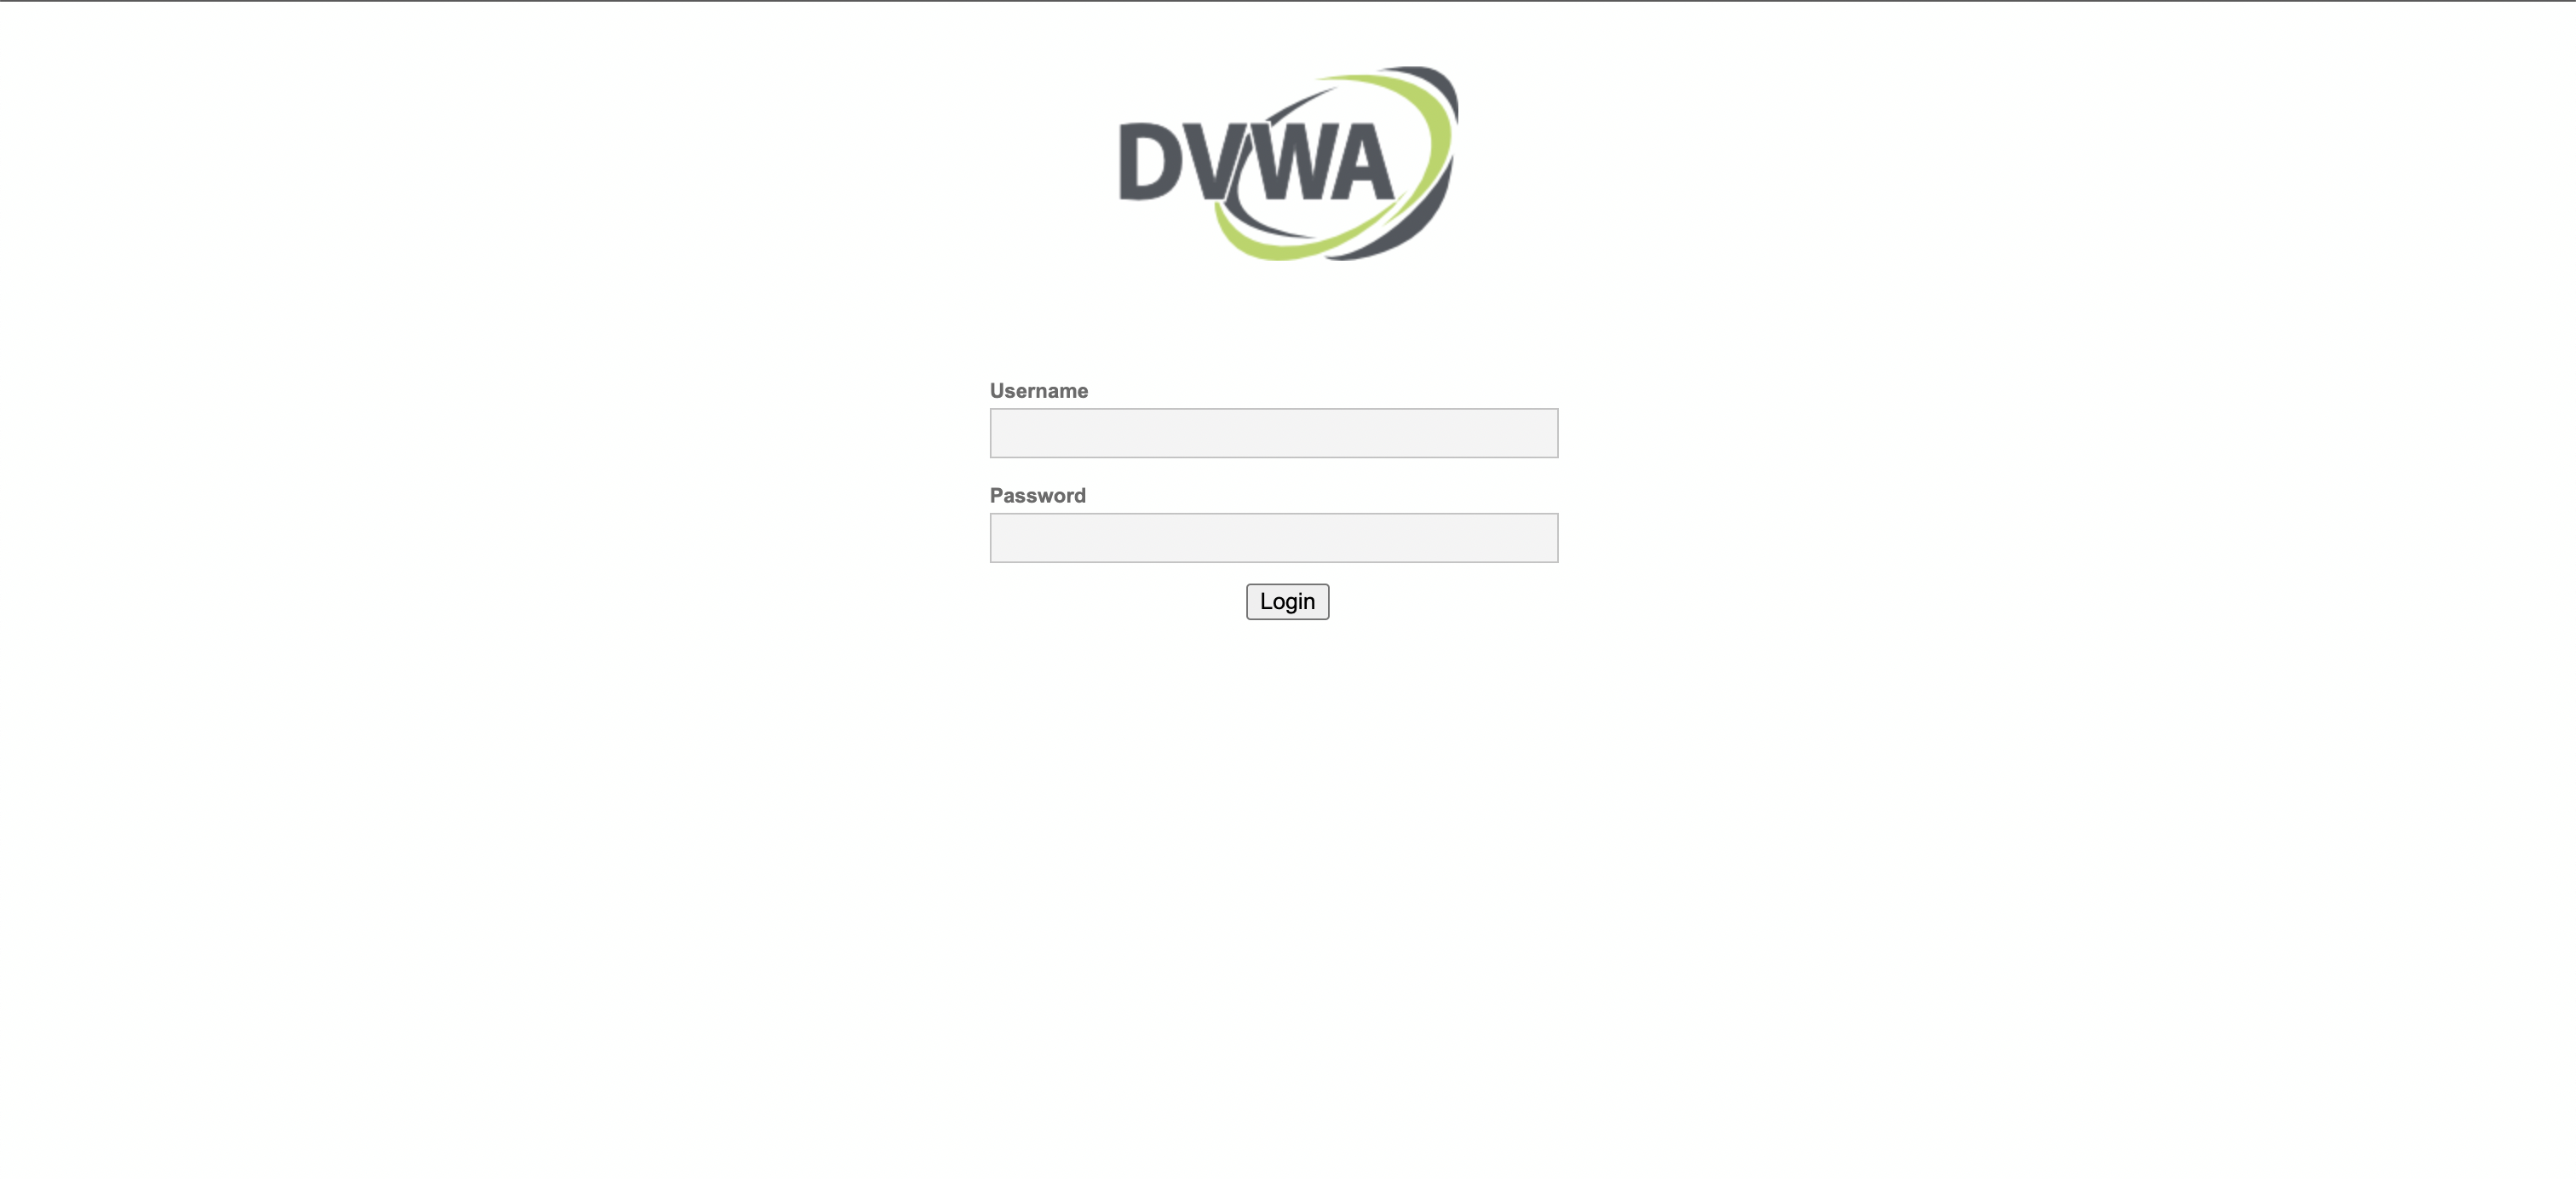 DVWA Login Page